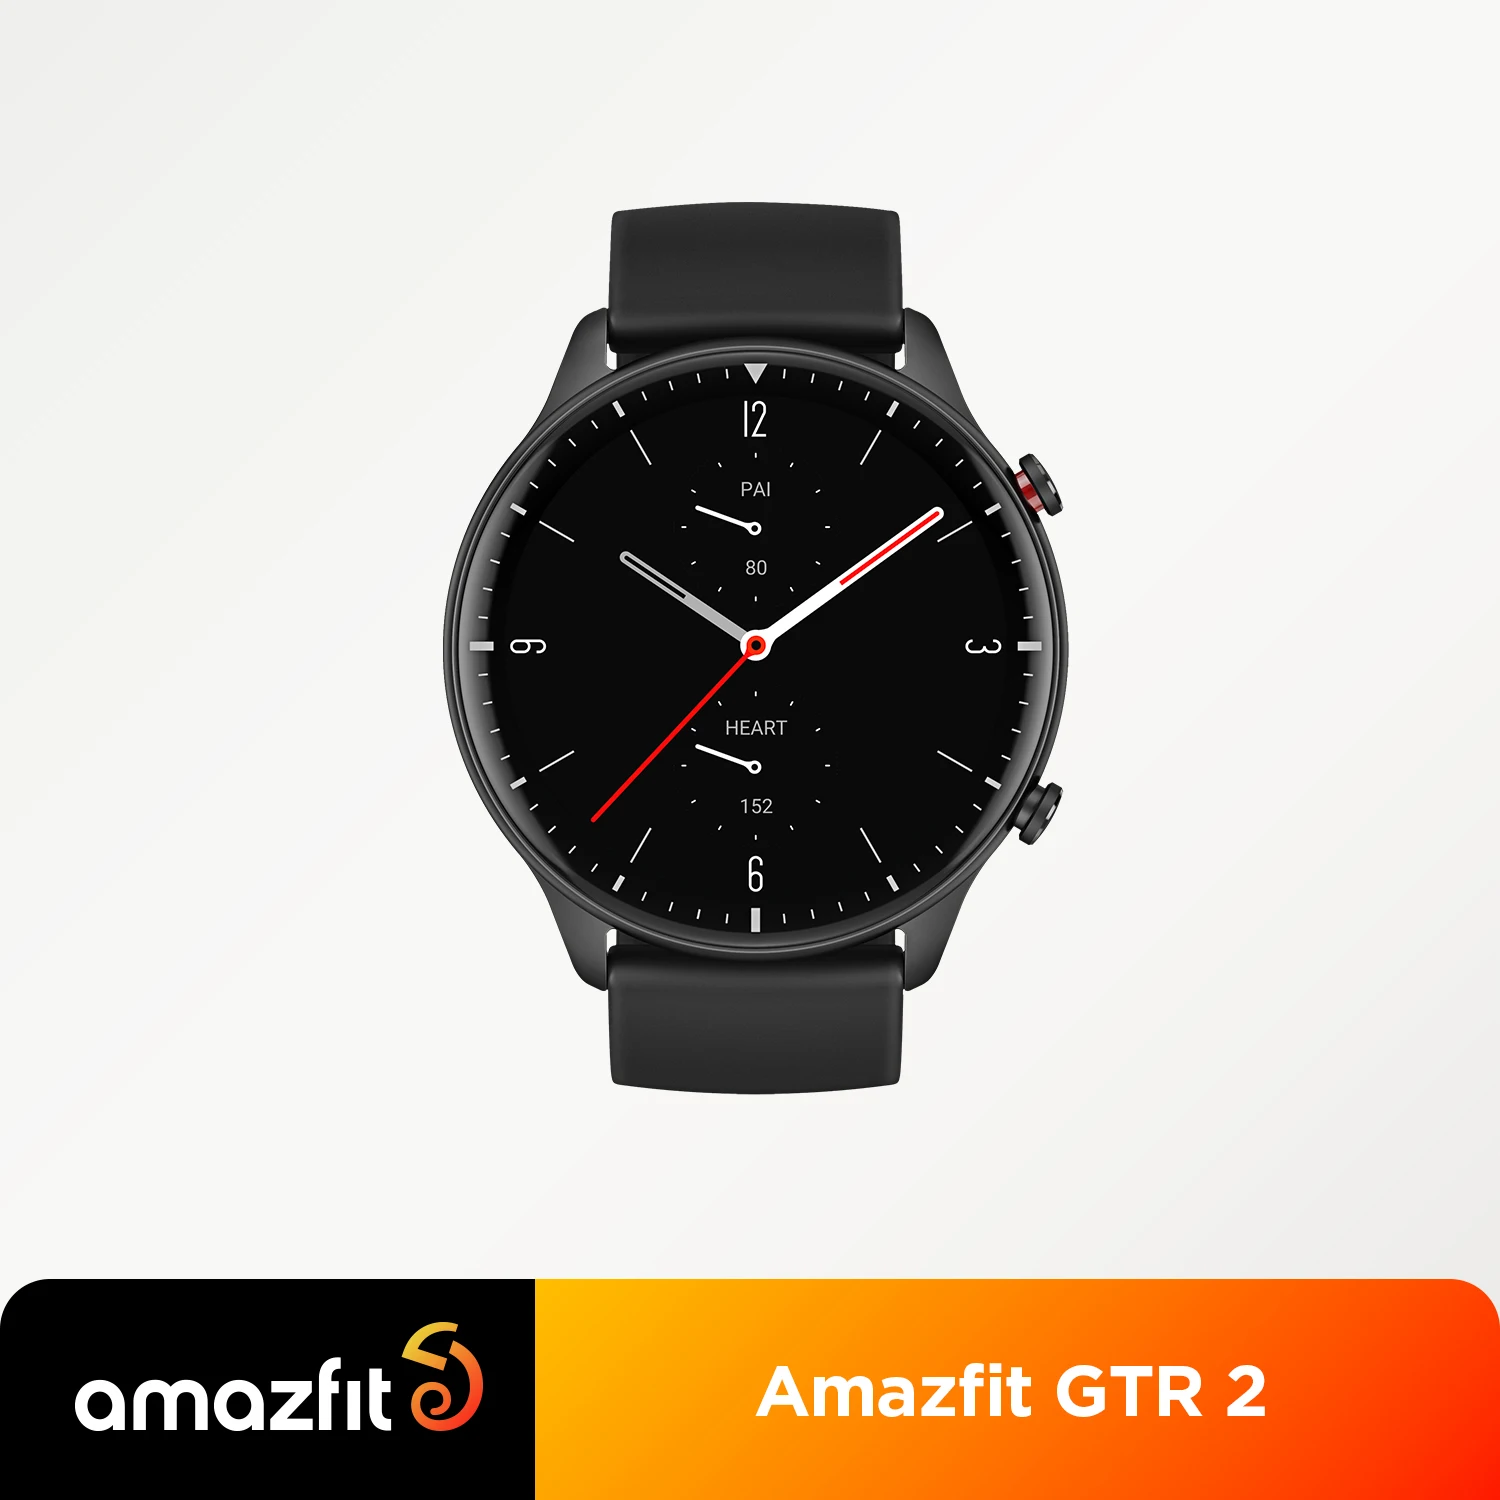  Смарт-часы Amazfit GTR 2 с поддержкой AMOLED, 5 АТМ, 14 дней автономной работы, встроенная музыка